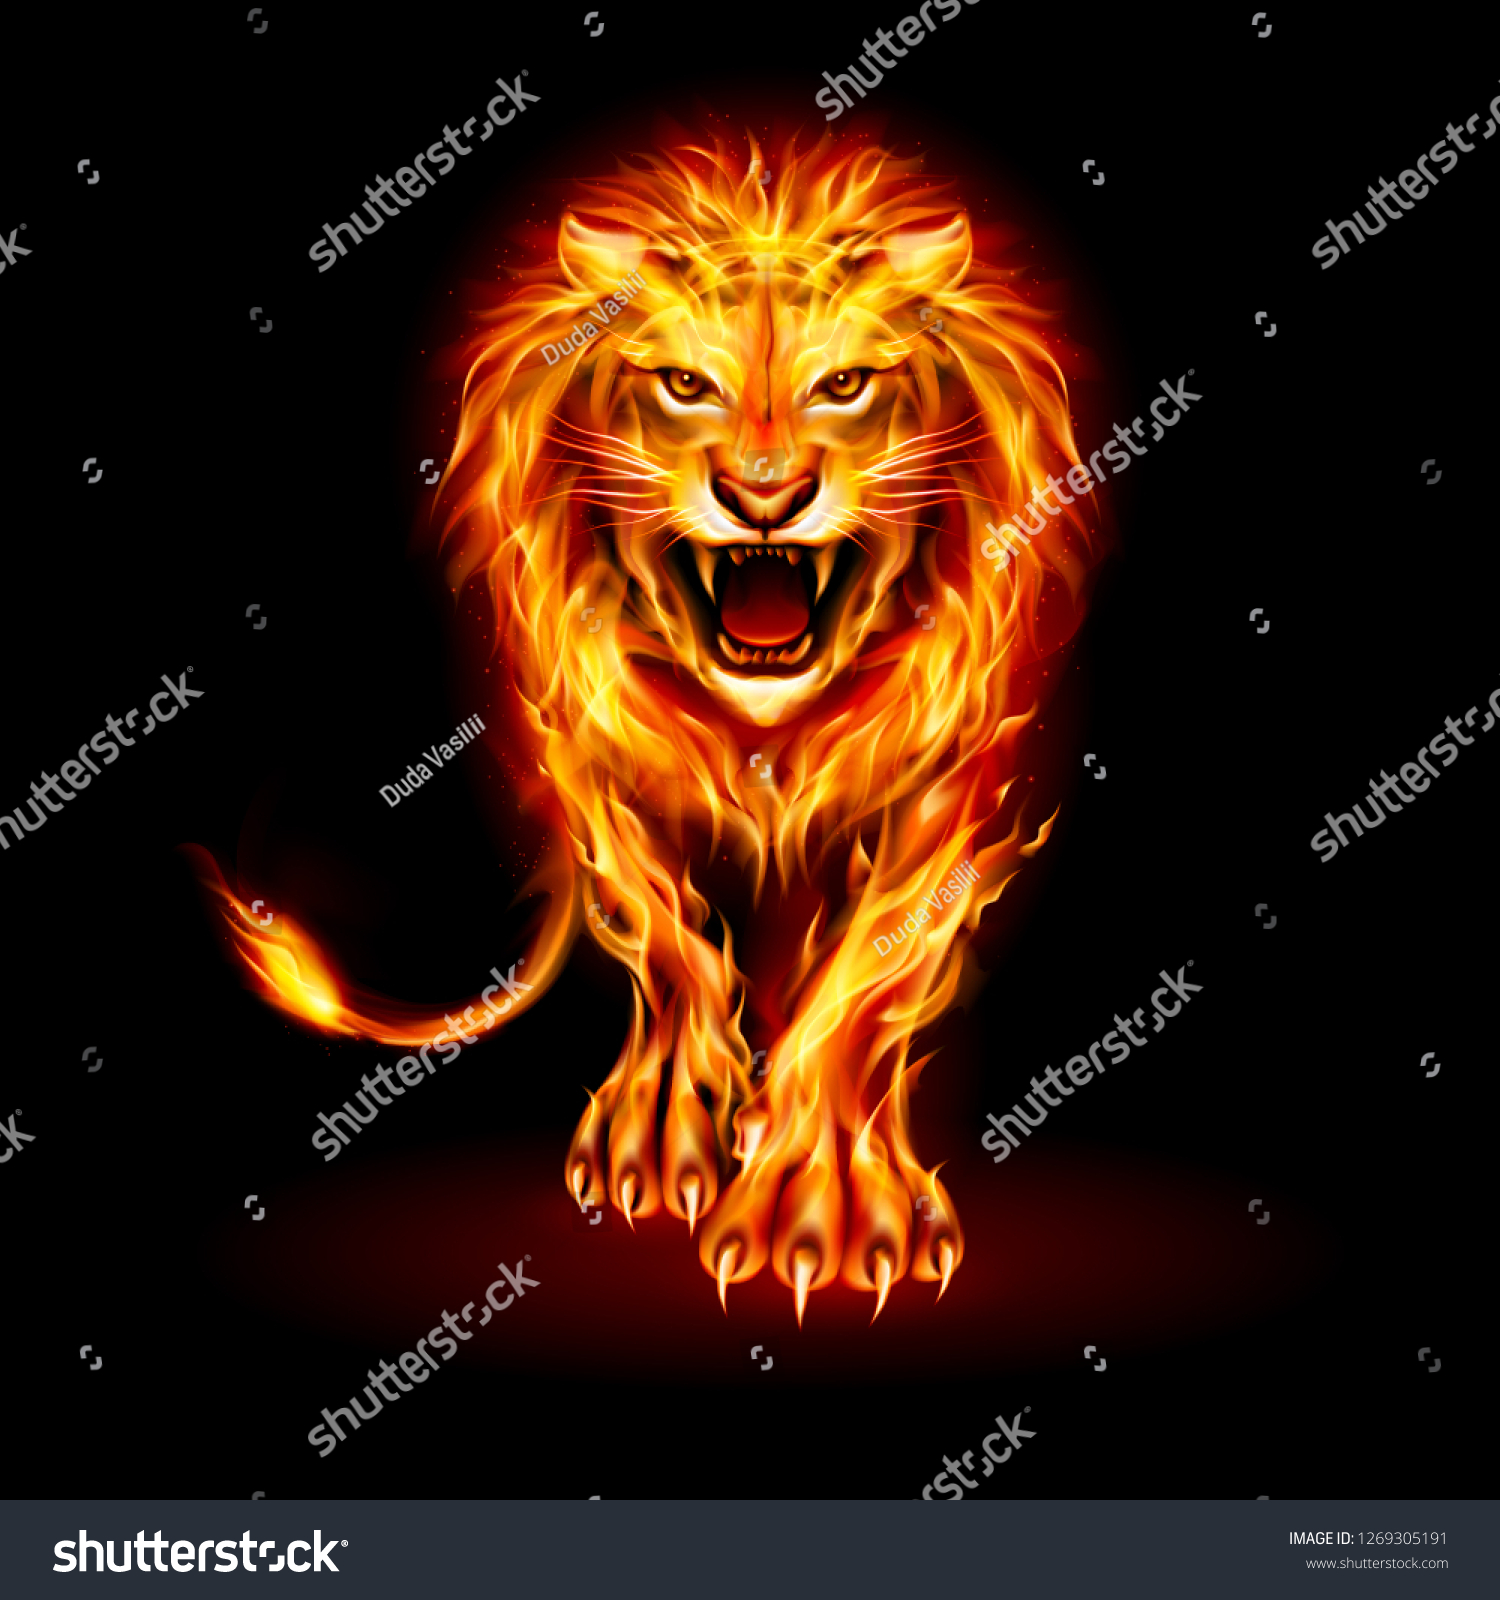 黒い背景に激怒したライオンと火の炎の毛皮の抽象的イラスト のベクター画像素材 ロイヤリティフリー Shutterstock